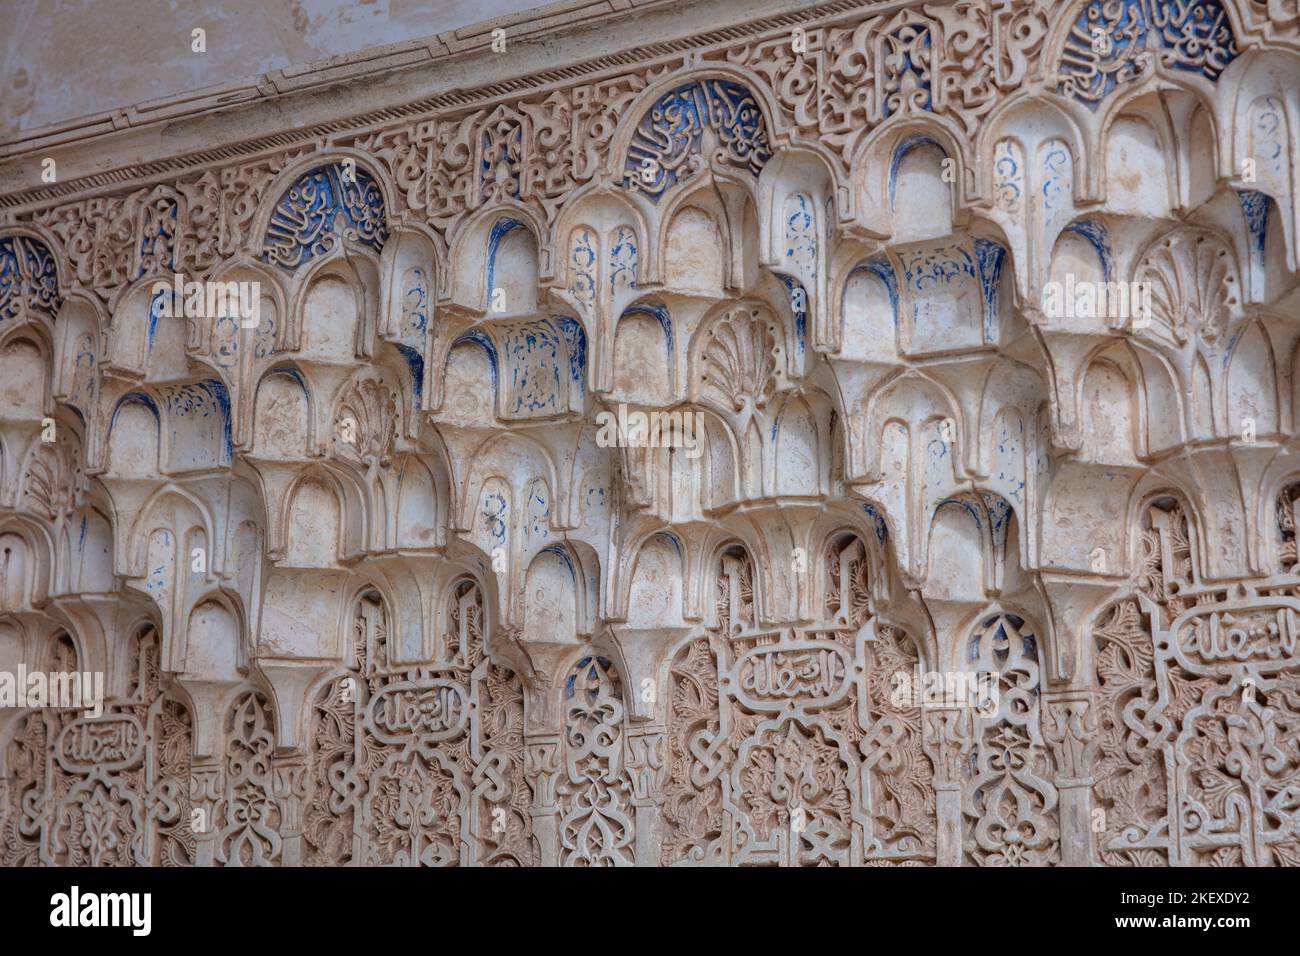 Dettagli architettonici islamici, Alhambra, Granada, Andalusia, Spagna Foto Stock